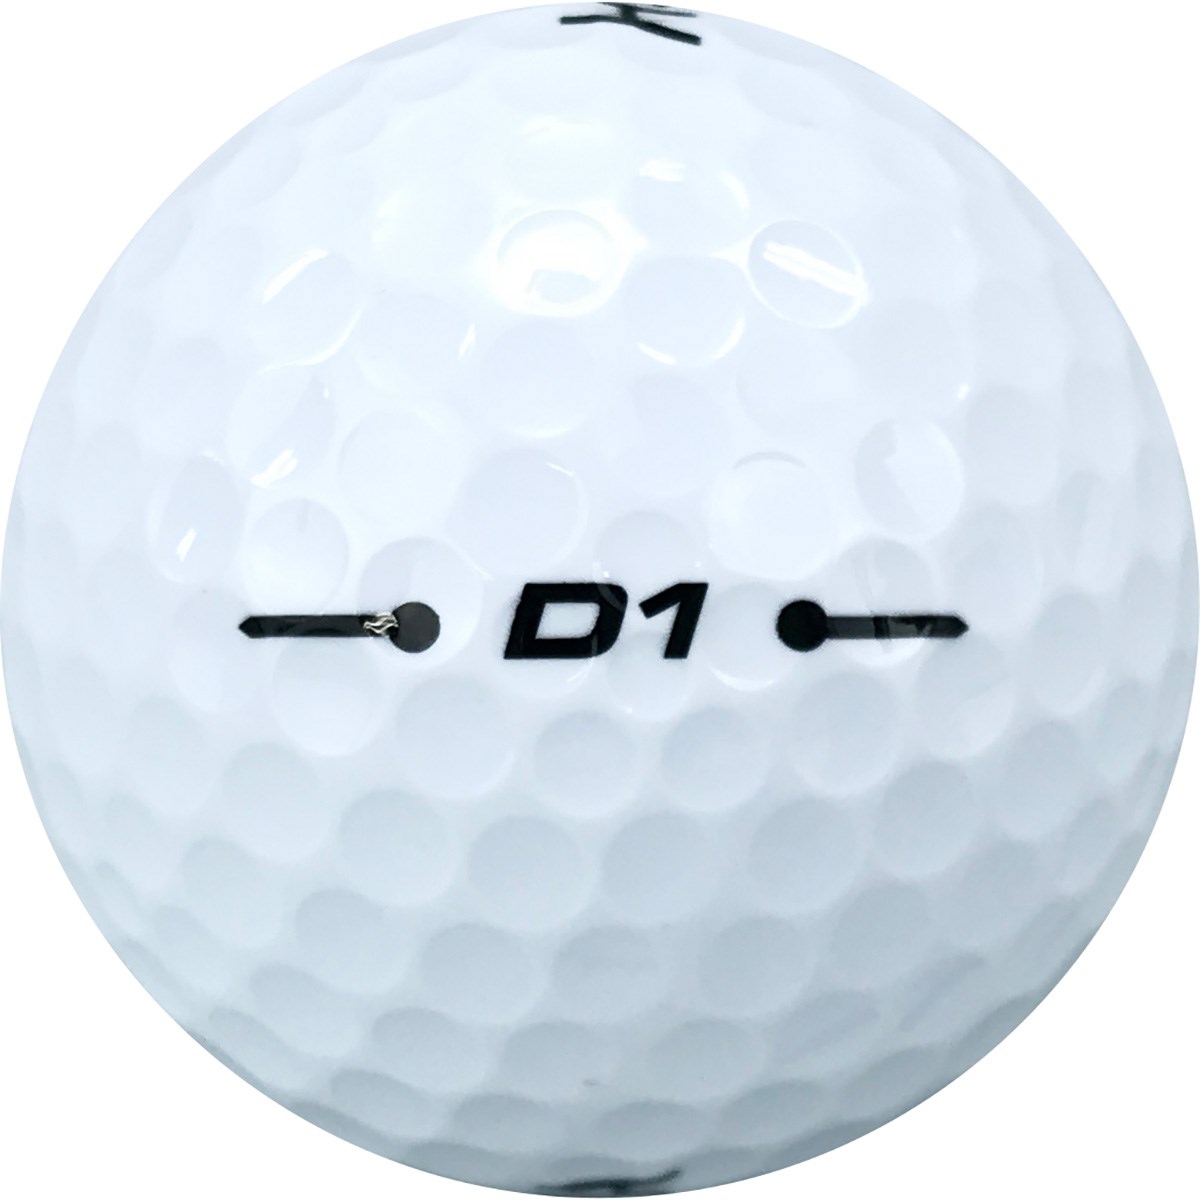 D1 ボール 年モデル 本間ゴルフ Honma 通販 Gdoゴルフショップ